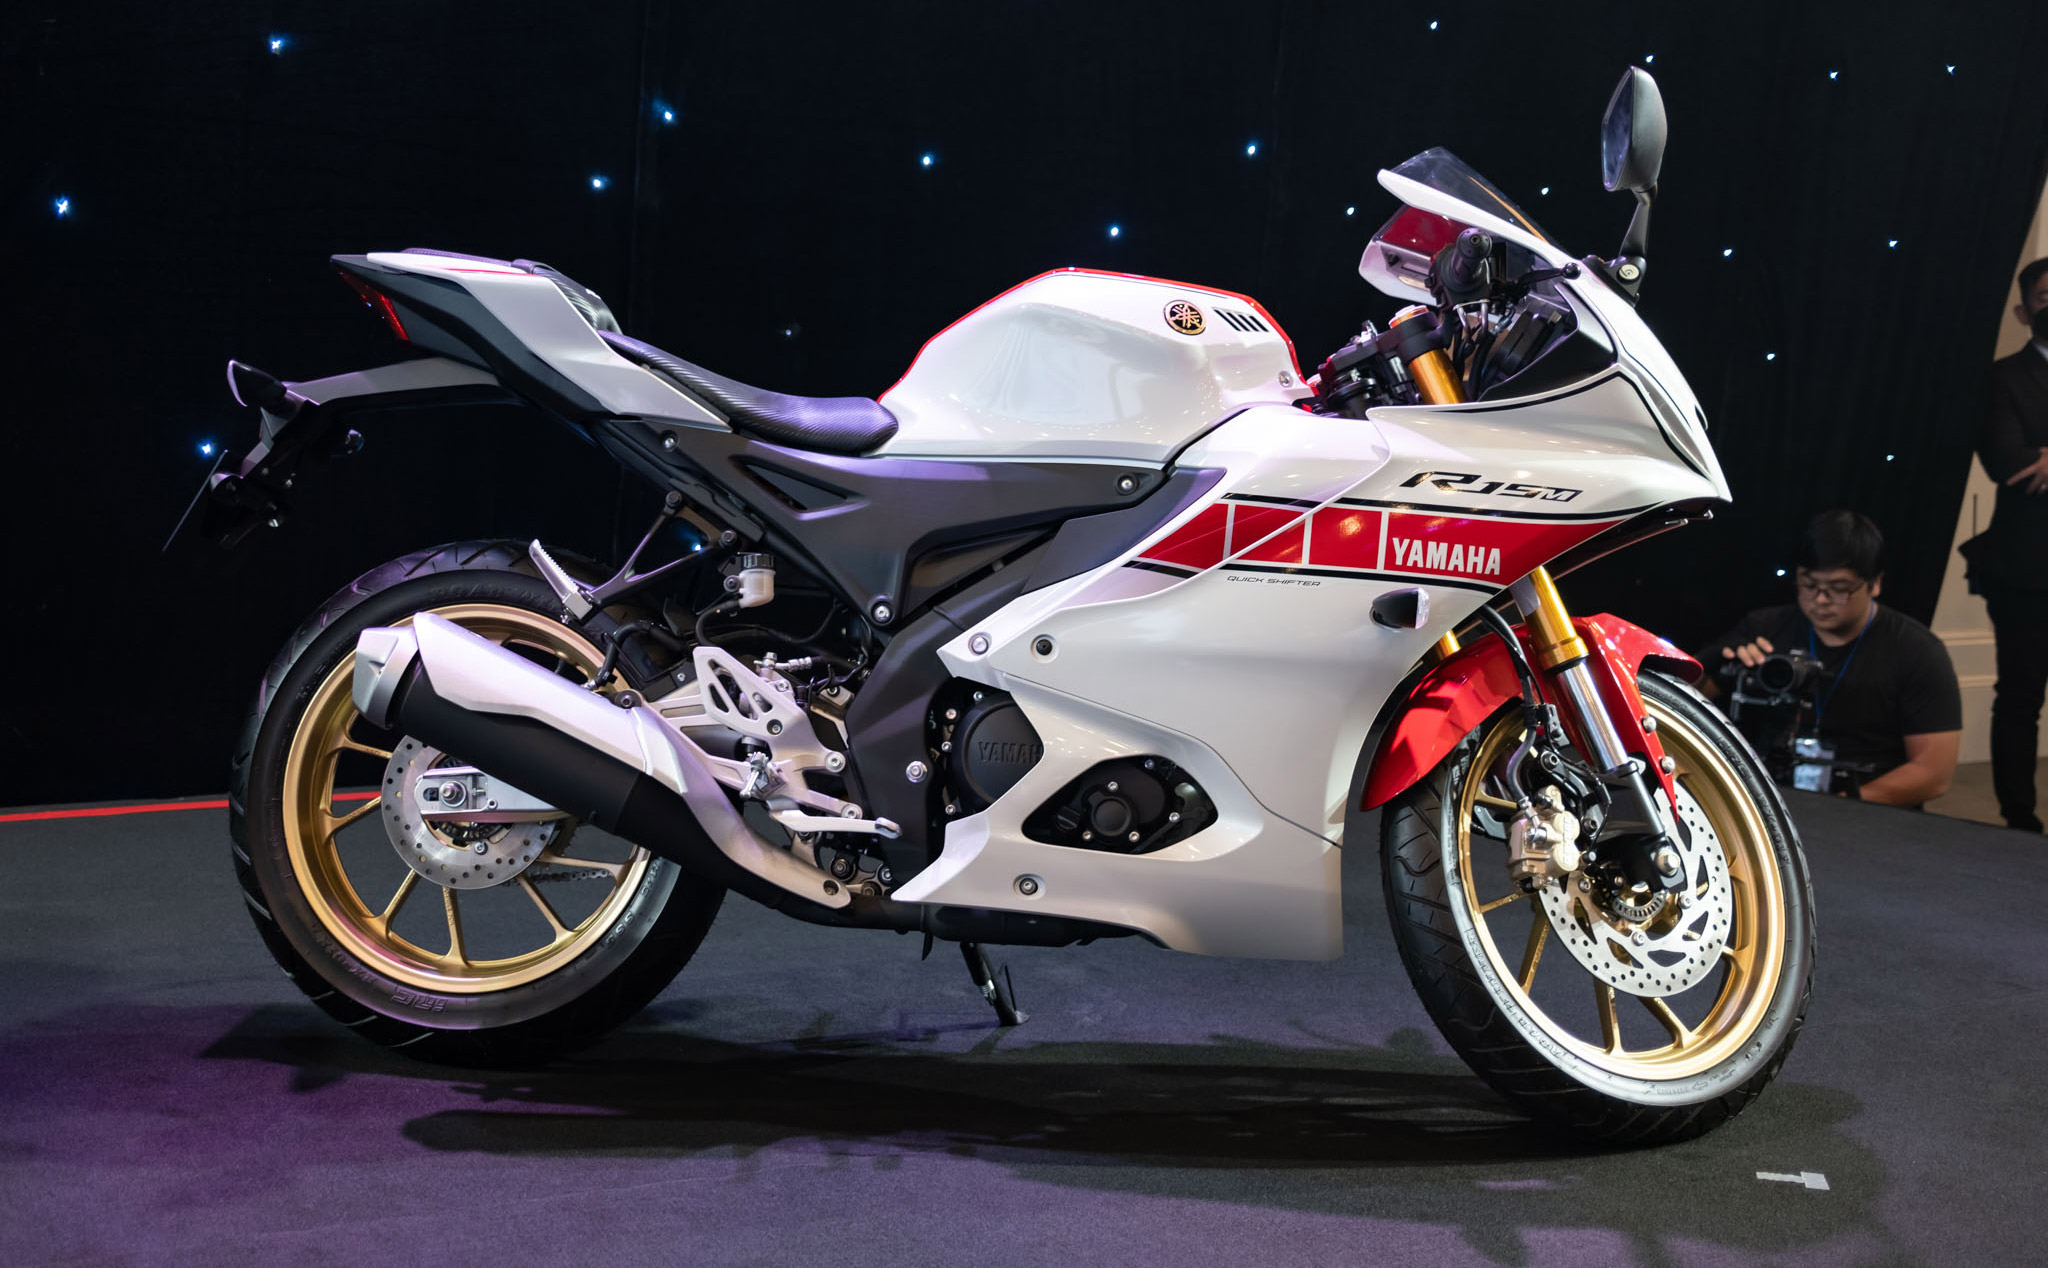 Trên tay Yamaha R15M V4 bản kỷ niệm MotorGP: Đẹp và nhiều trang bị cao cấp